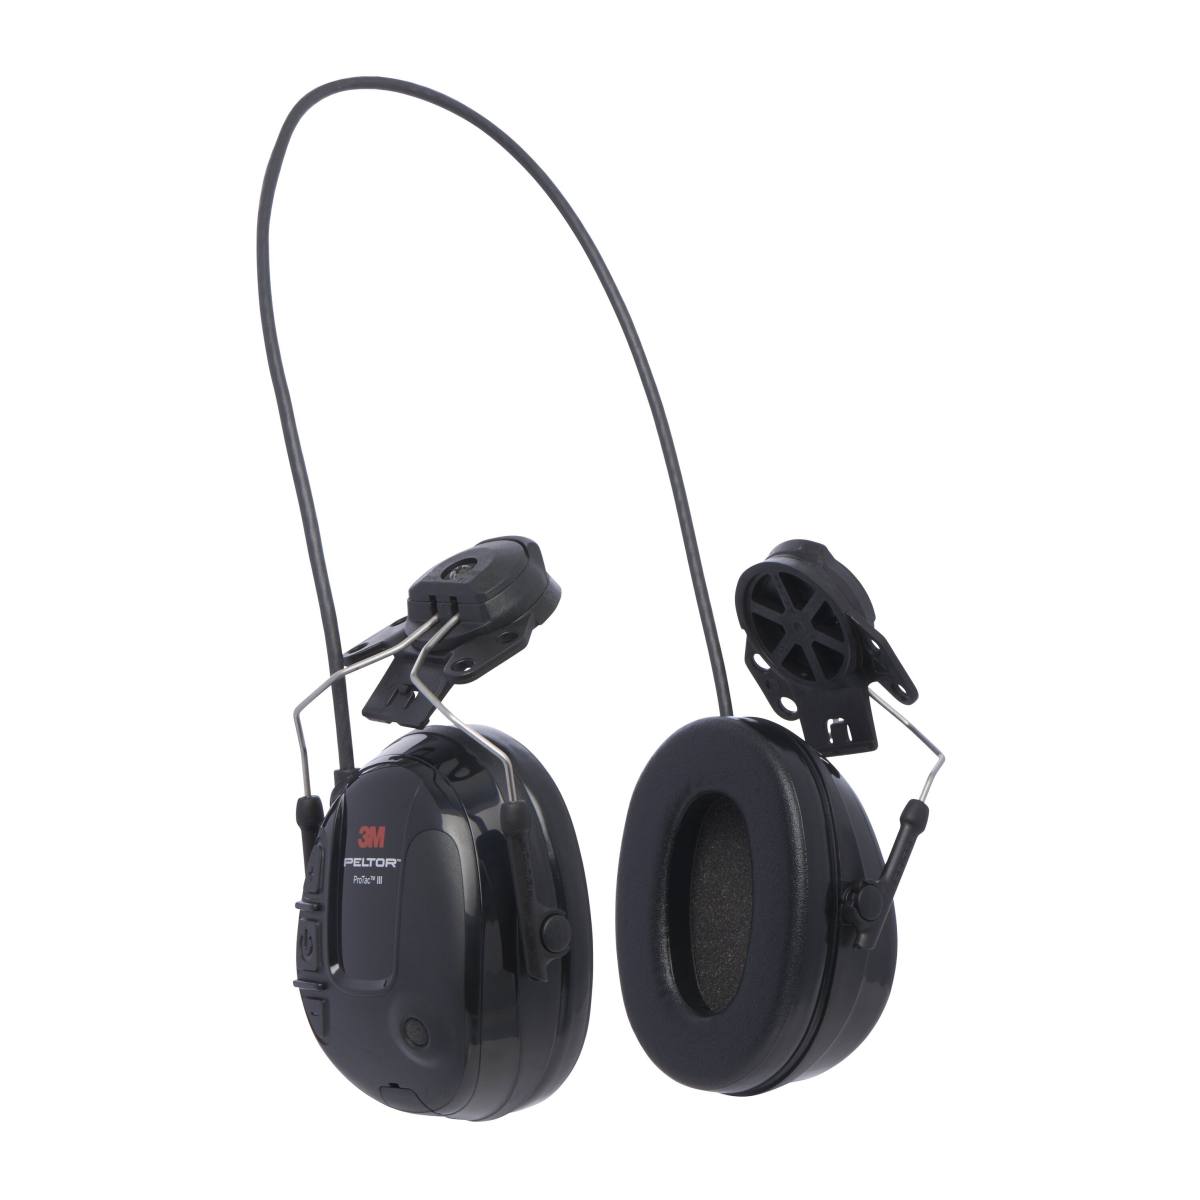 3M Peltor ProTac III Slim kuulonsuojaimet, musta, kypäräversio, aktiivinen, tasosta riippuvainen vaimennustekniikka ympäristön melun havaitsemiseksi, SNR = 25 dB, musta